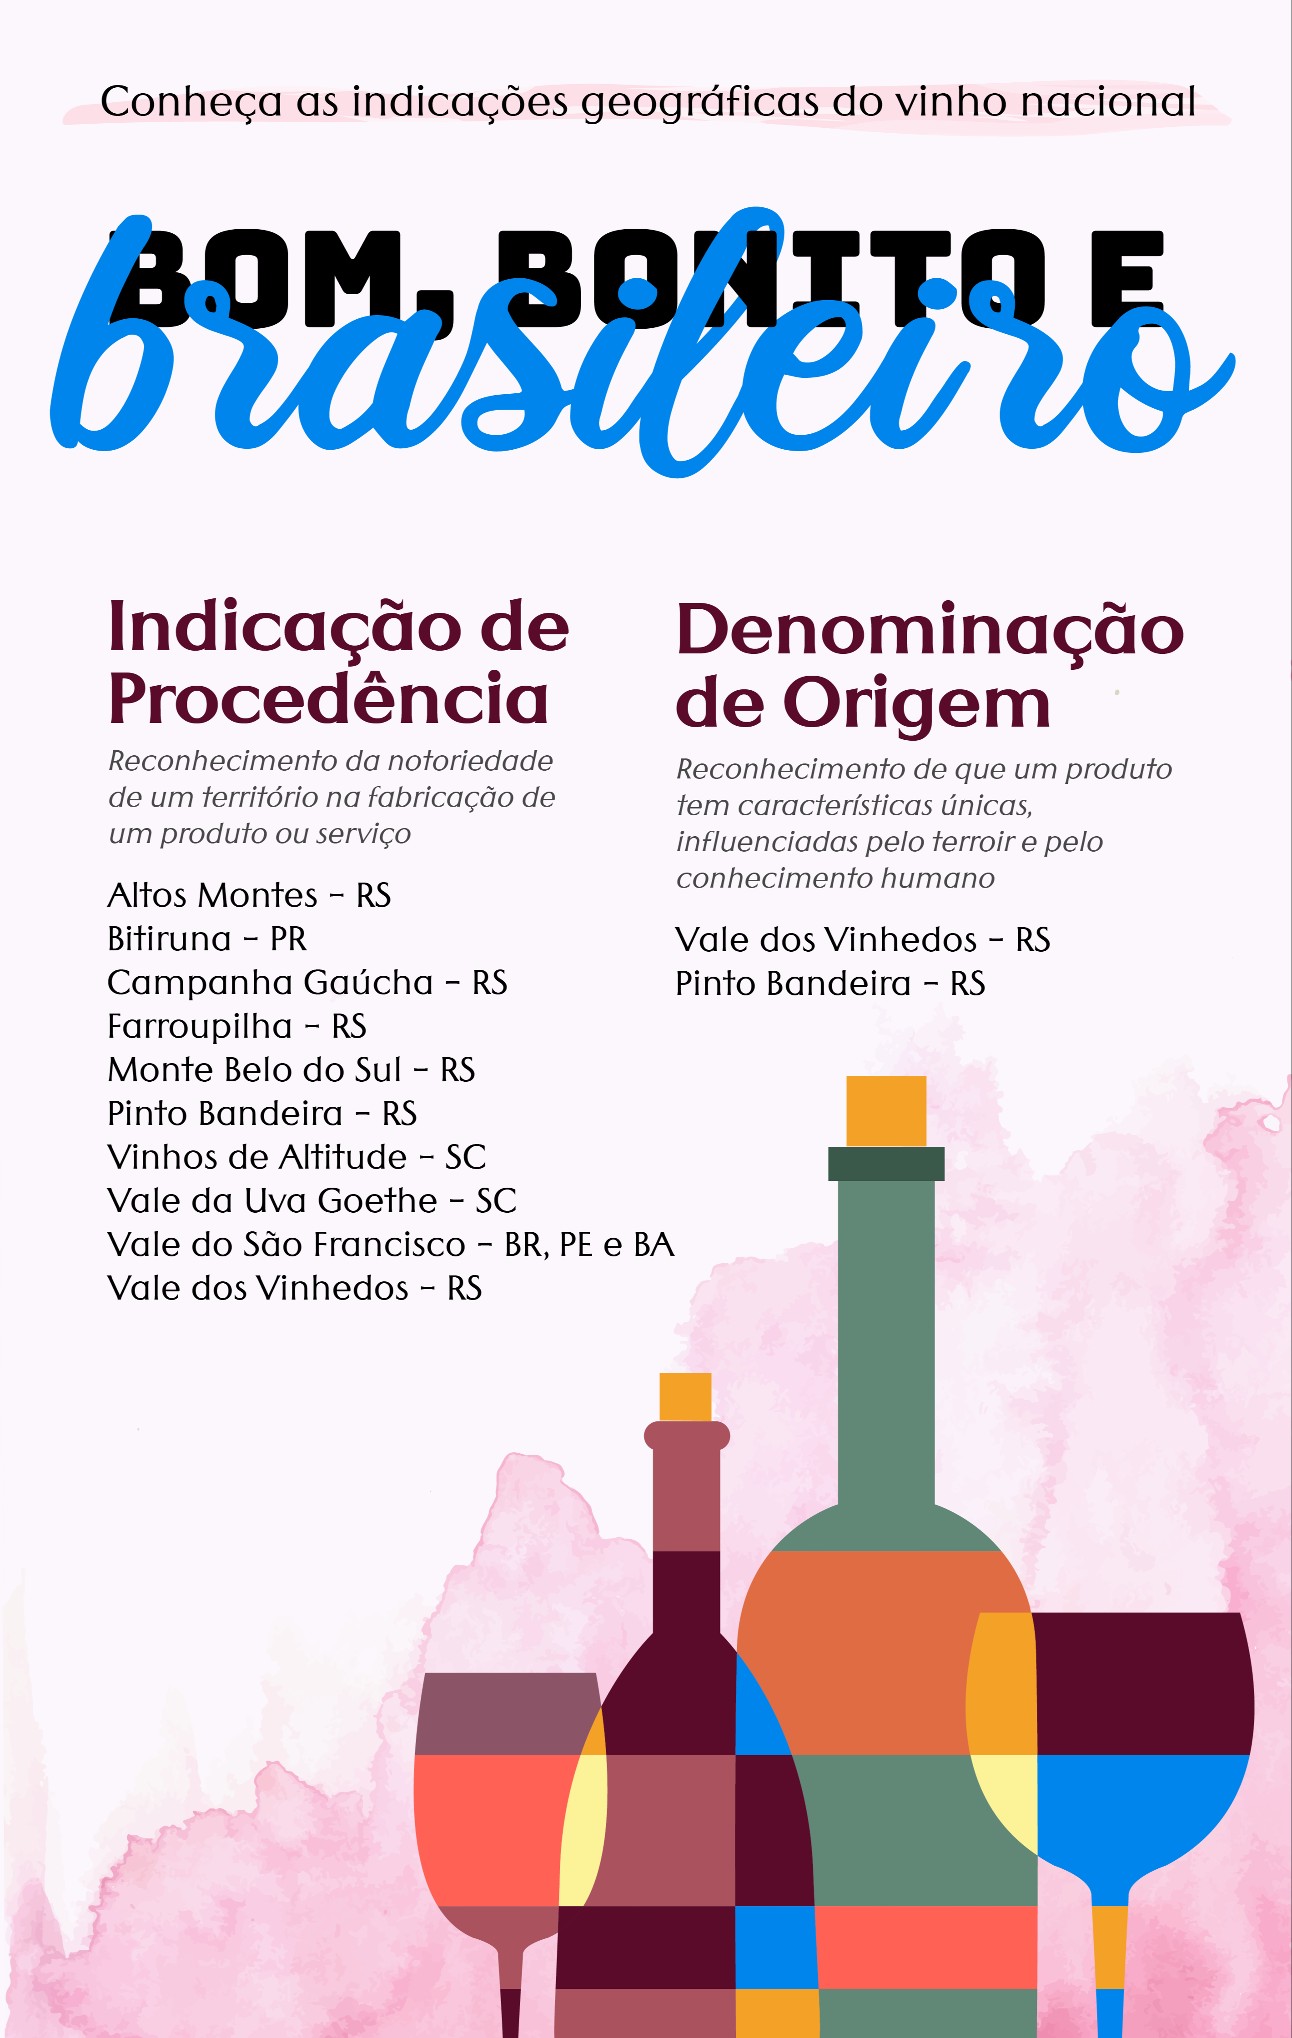 infografia colorida traz ilustração de garrafas e copos de vinhos, assim como lista dos vinhos brasileiros protegidos por indicações geográficas